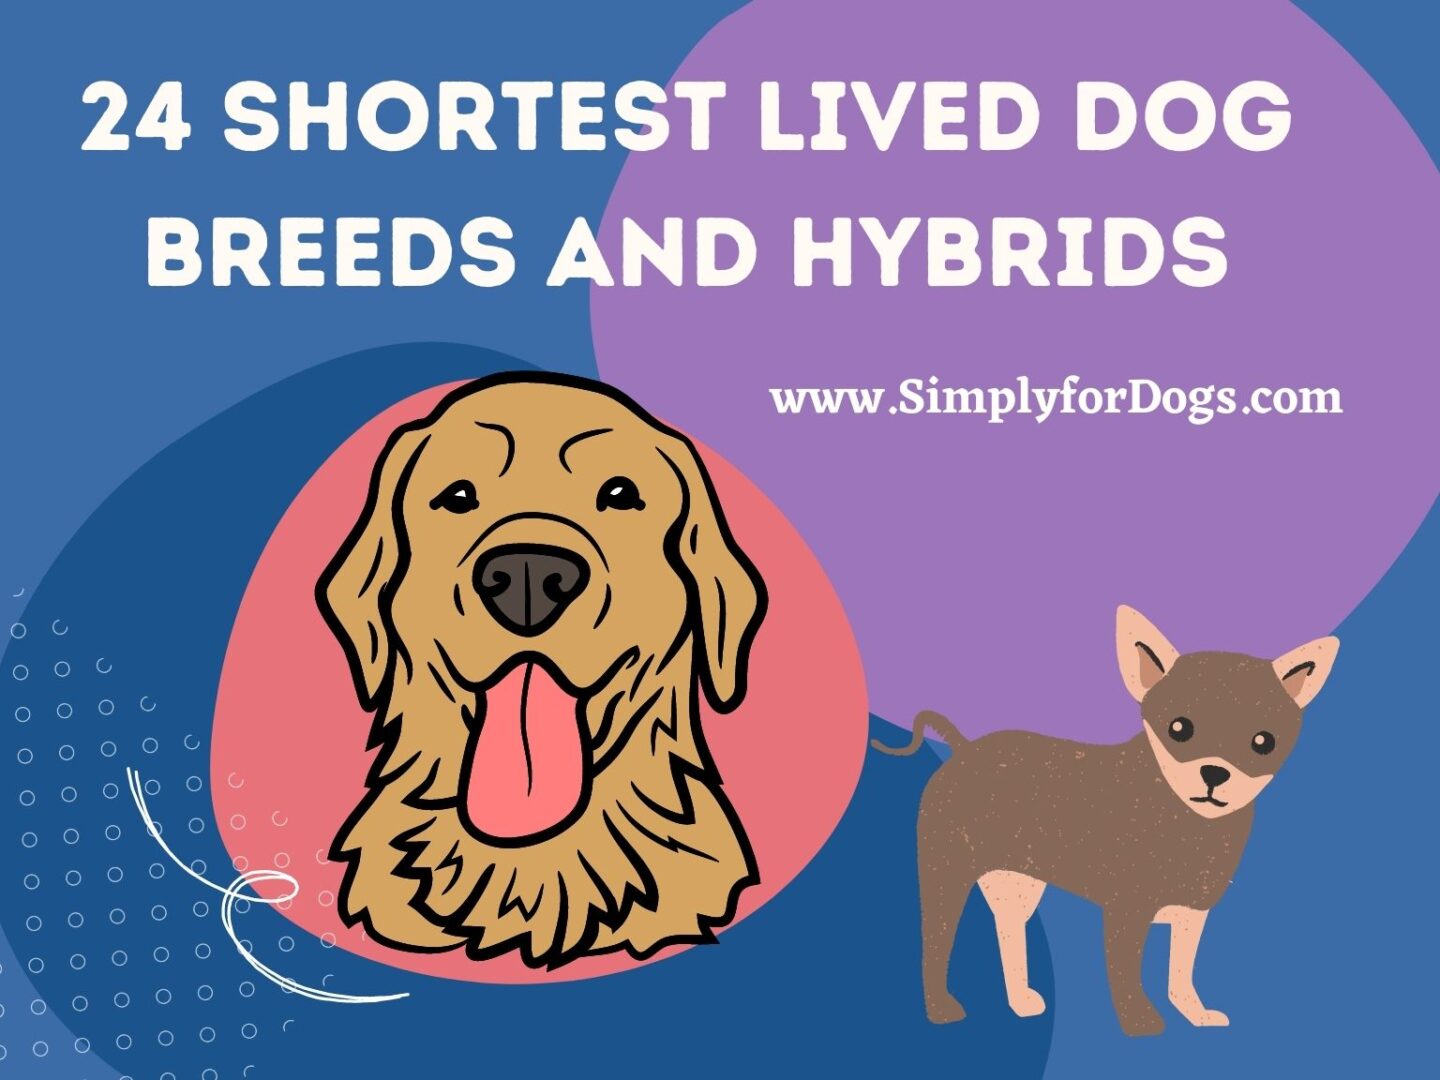 24 Shortest Lived Dog Breeds and Hybrids